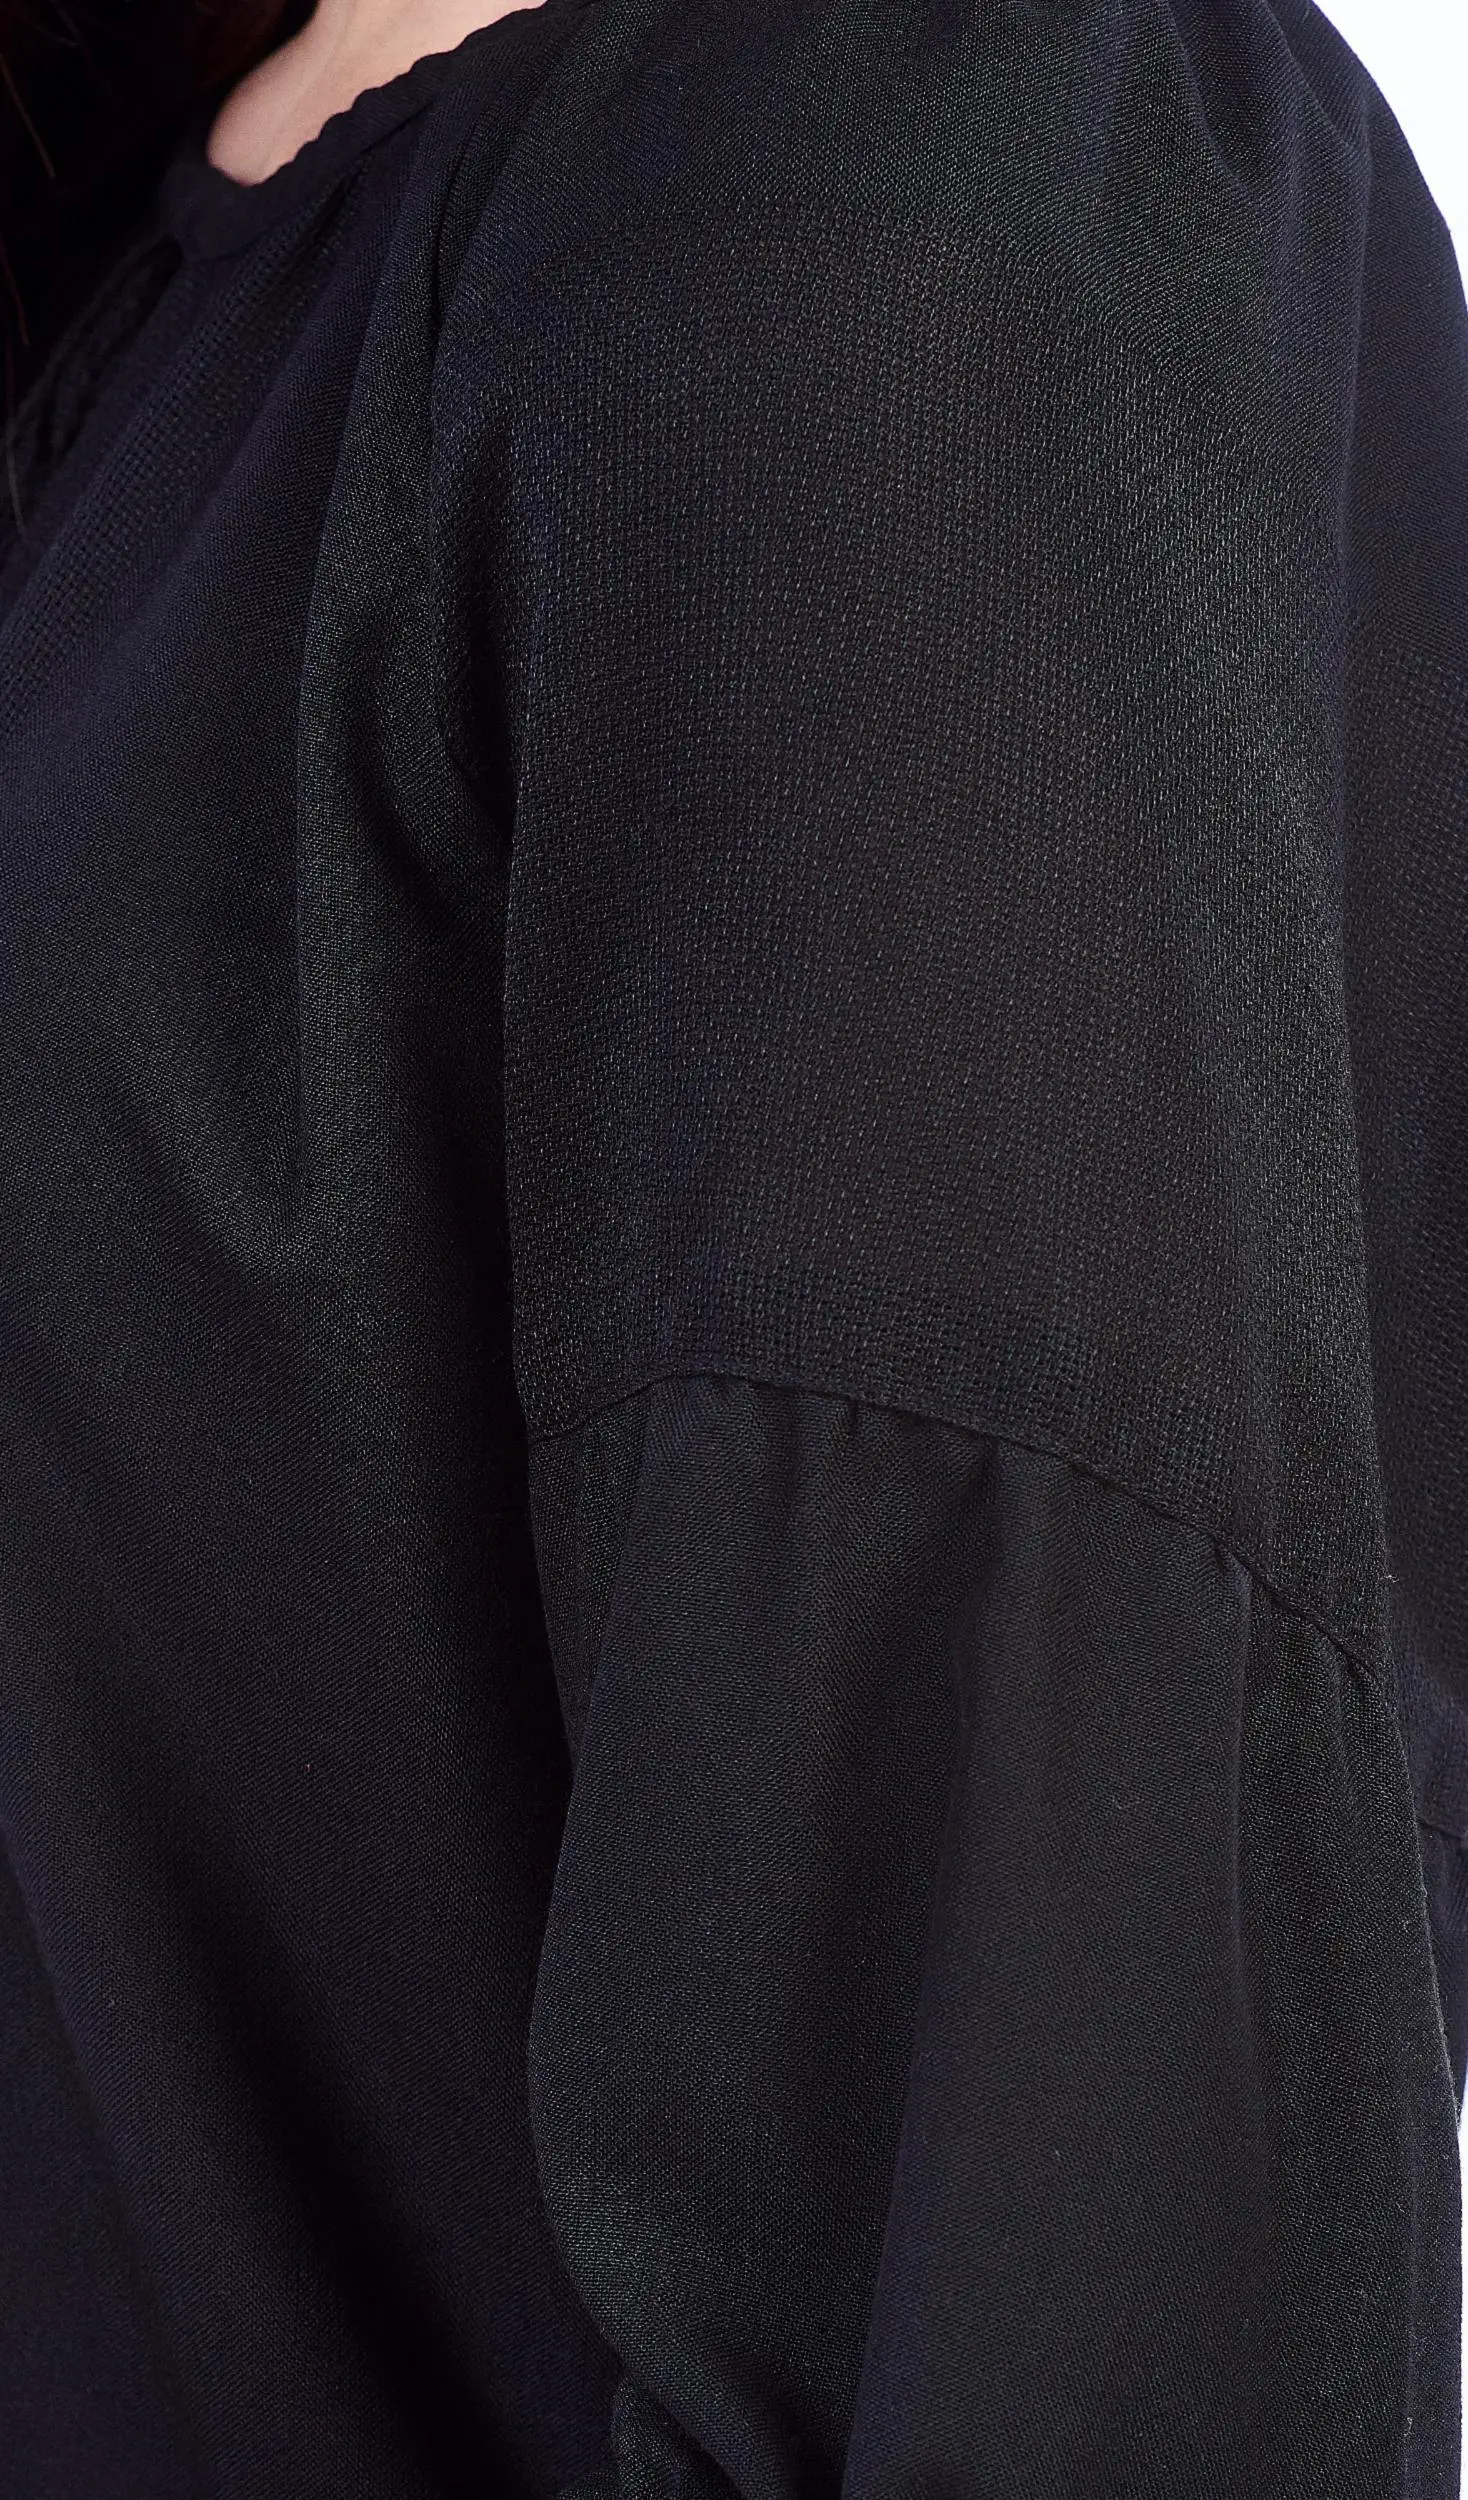 ТПК-172 03-02/09 Сорочка жіноча під вишивку, чорна, 3/4 рукав, розмір 40